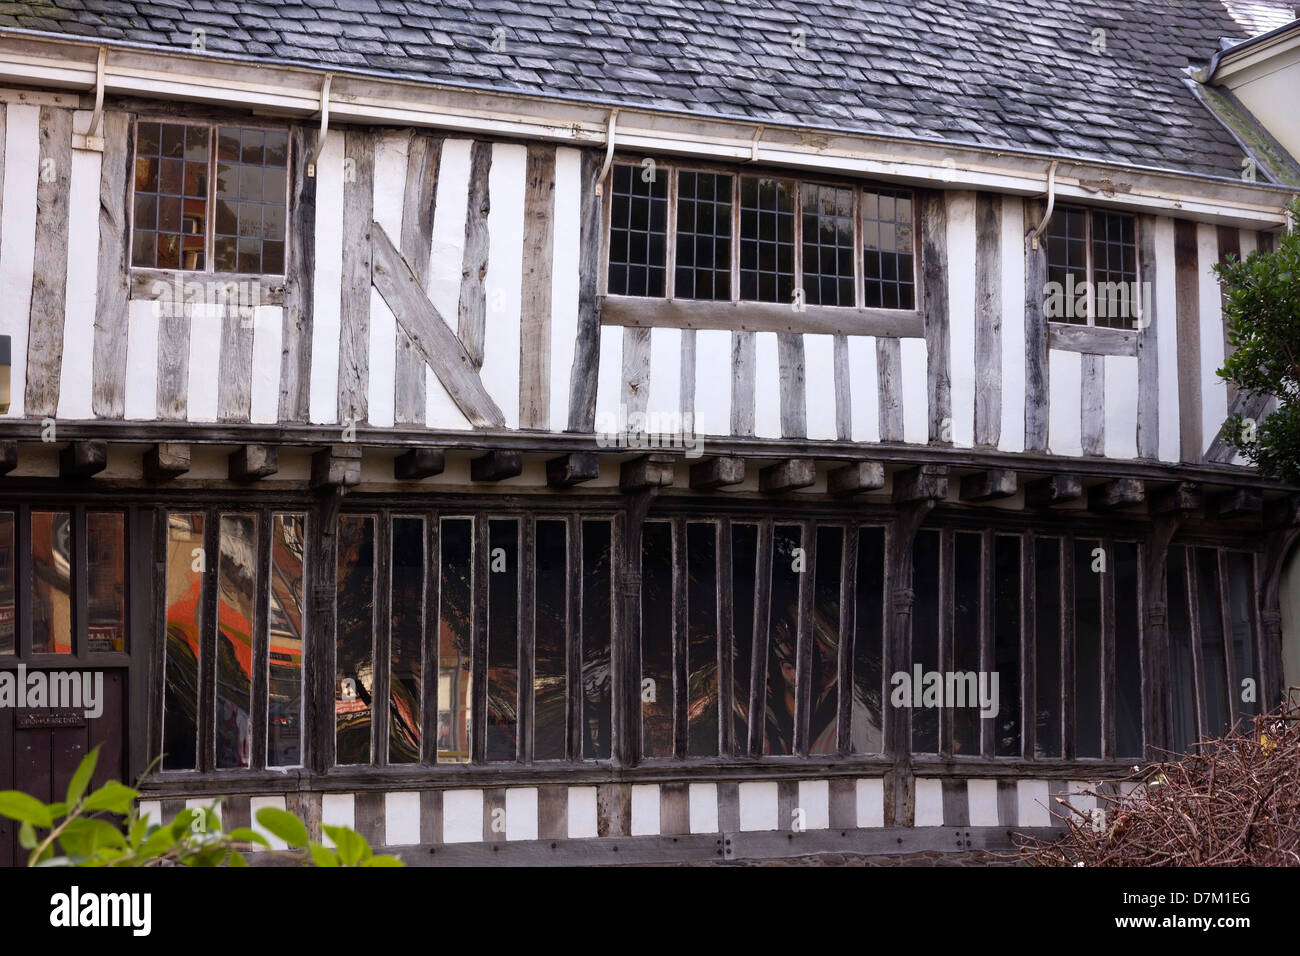 Antica quercia edificio con travi di legno, Wygston's House, la più antica casa di Leicester, risalente al 1490, Leicester, England, Regno Unito Foto Stock